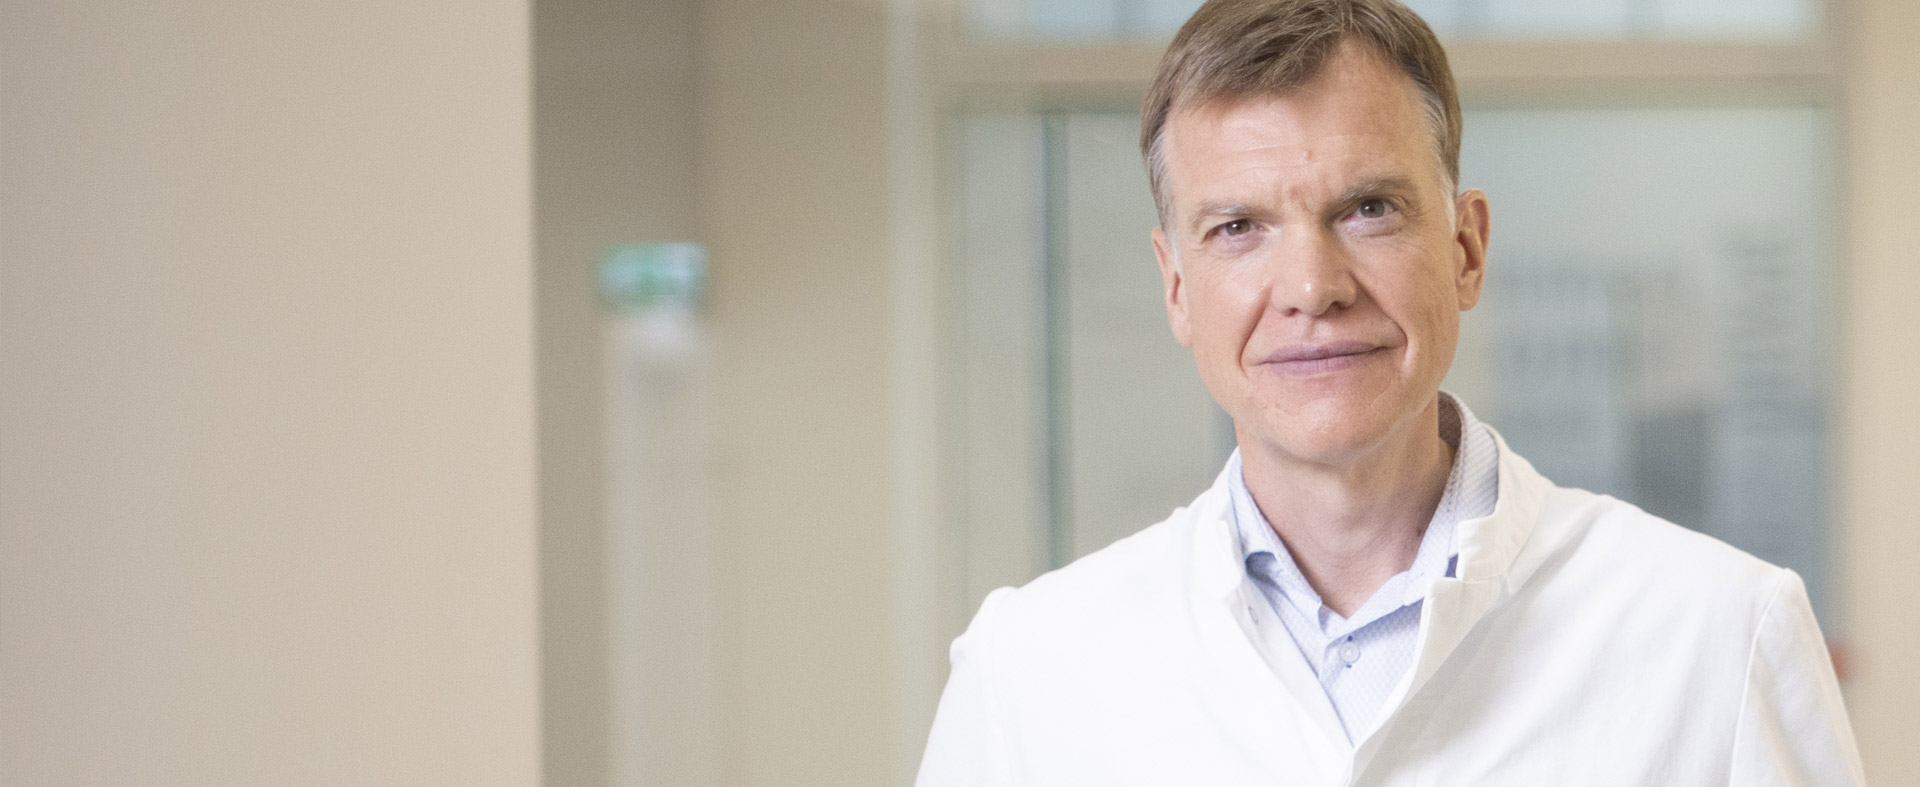 Bauchspeicheldrüse Experte Wien Chirurg Dr. Martin Schindl